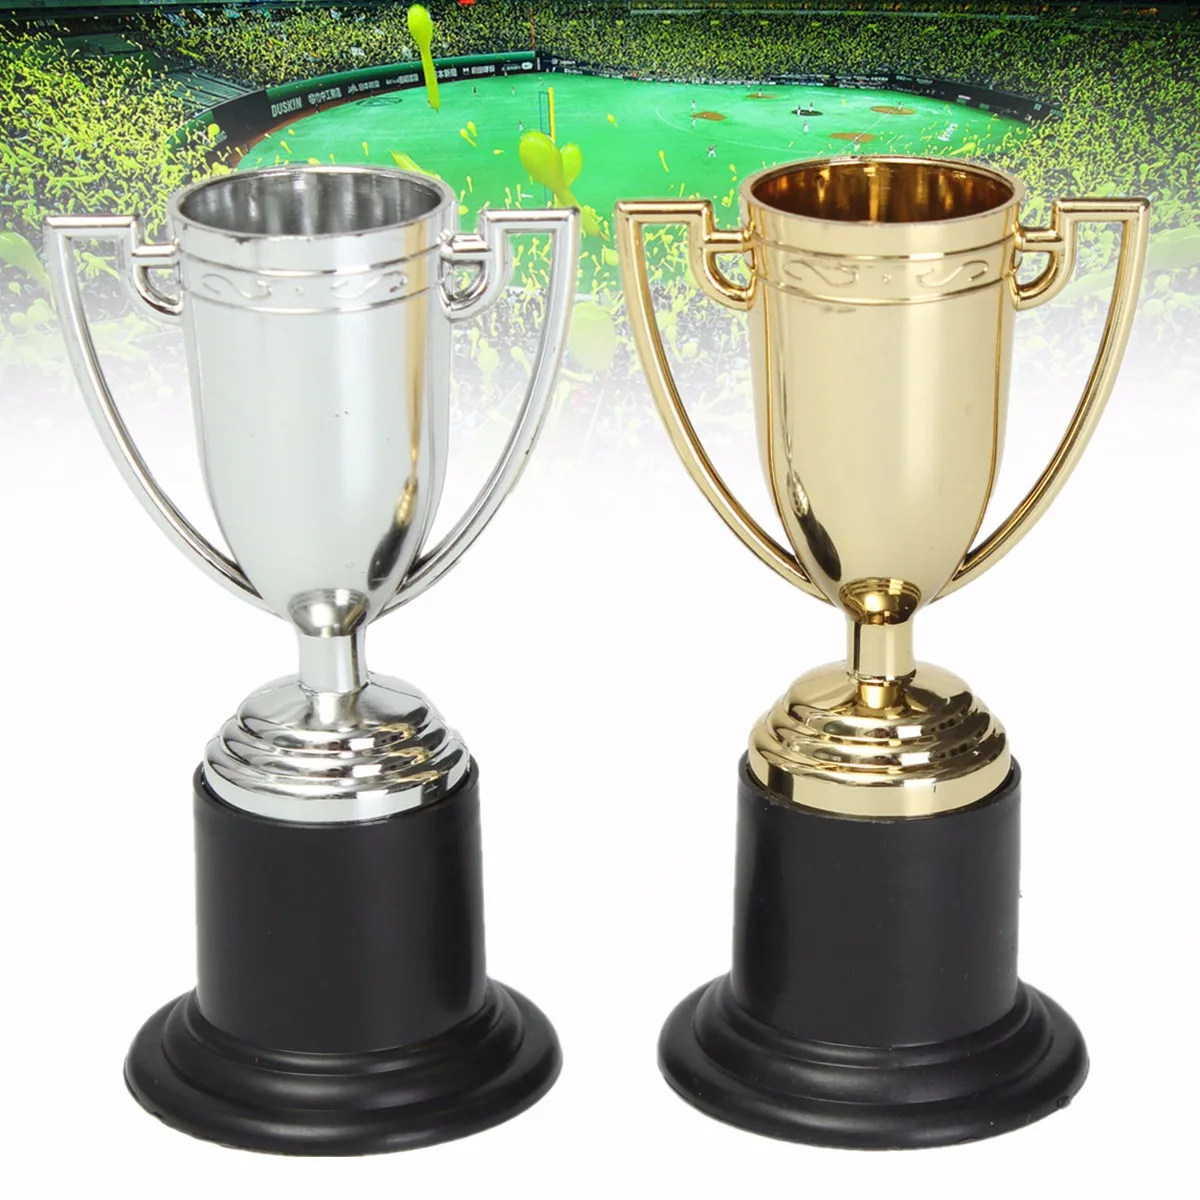 Мини-трофей трофеи золотые серебряные футбольные чашки трофеи 10 см для спортивных мероприятий День рождения Дети партия наполнитель подарок